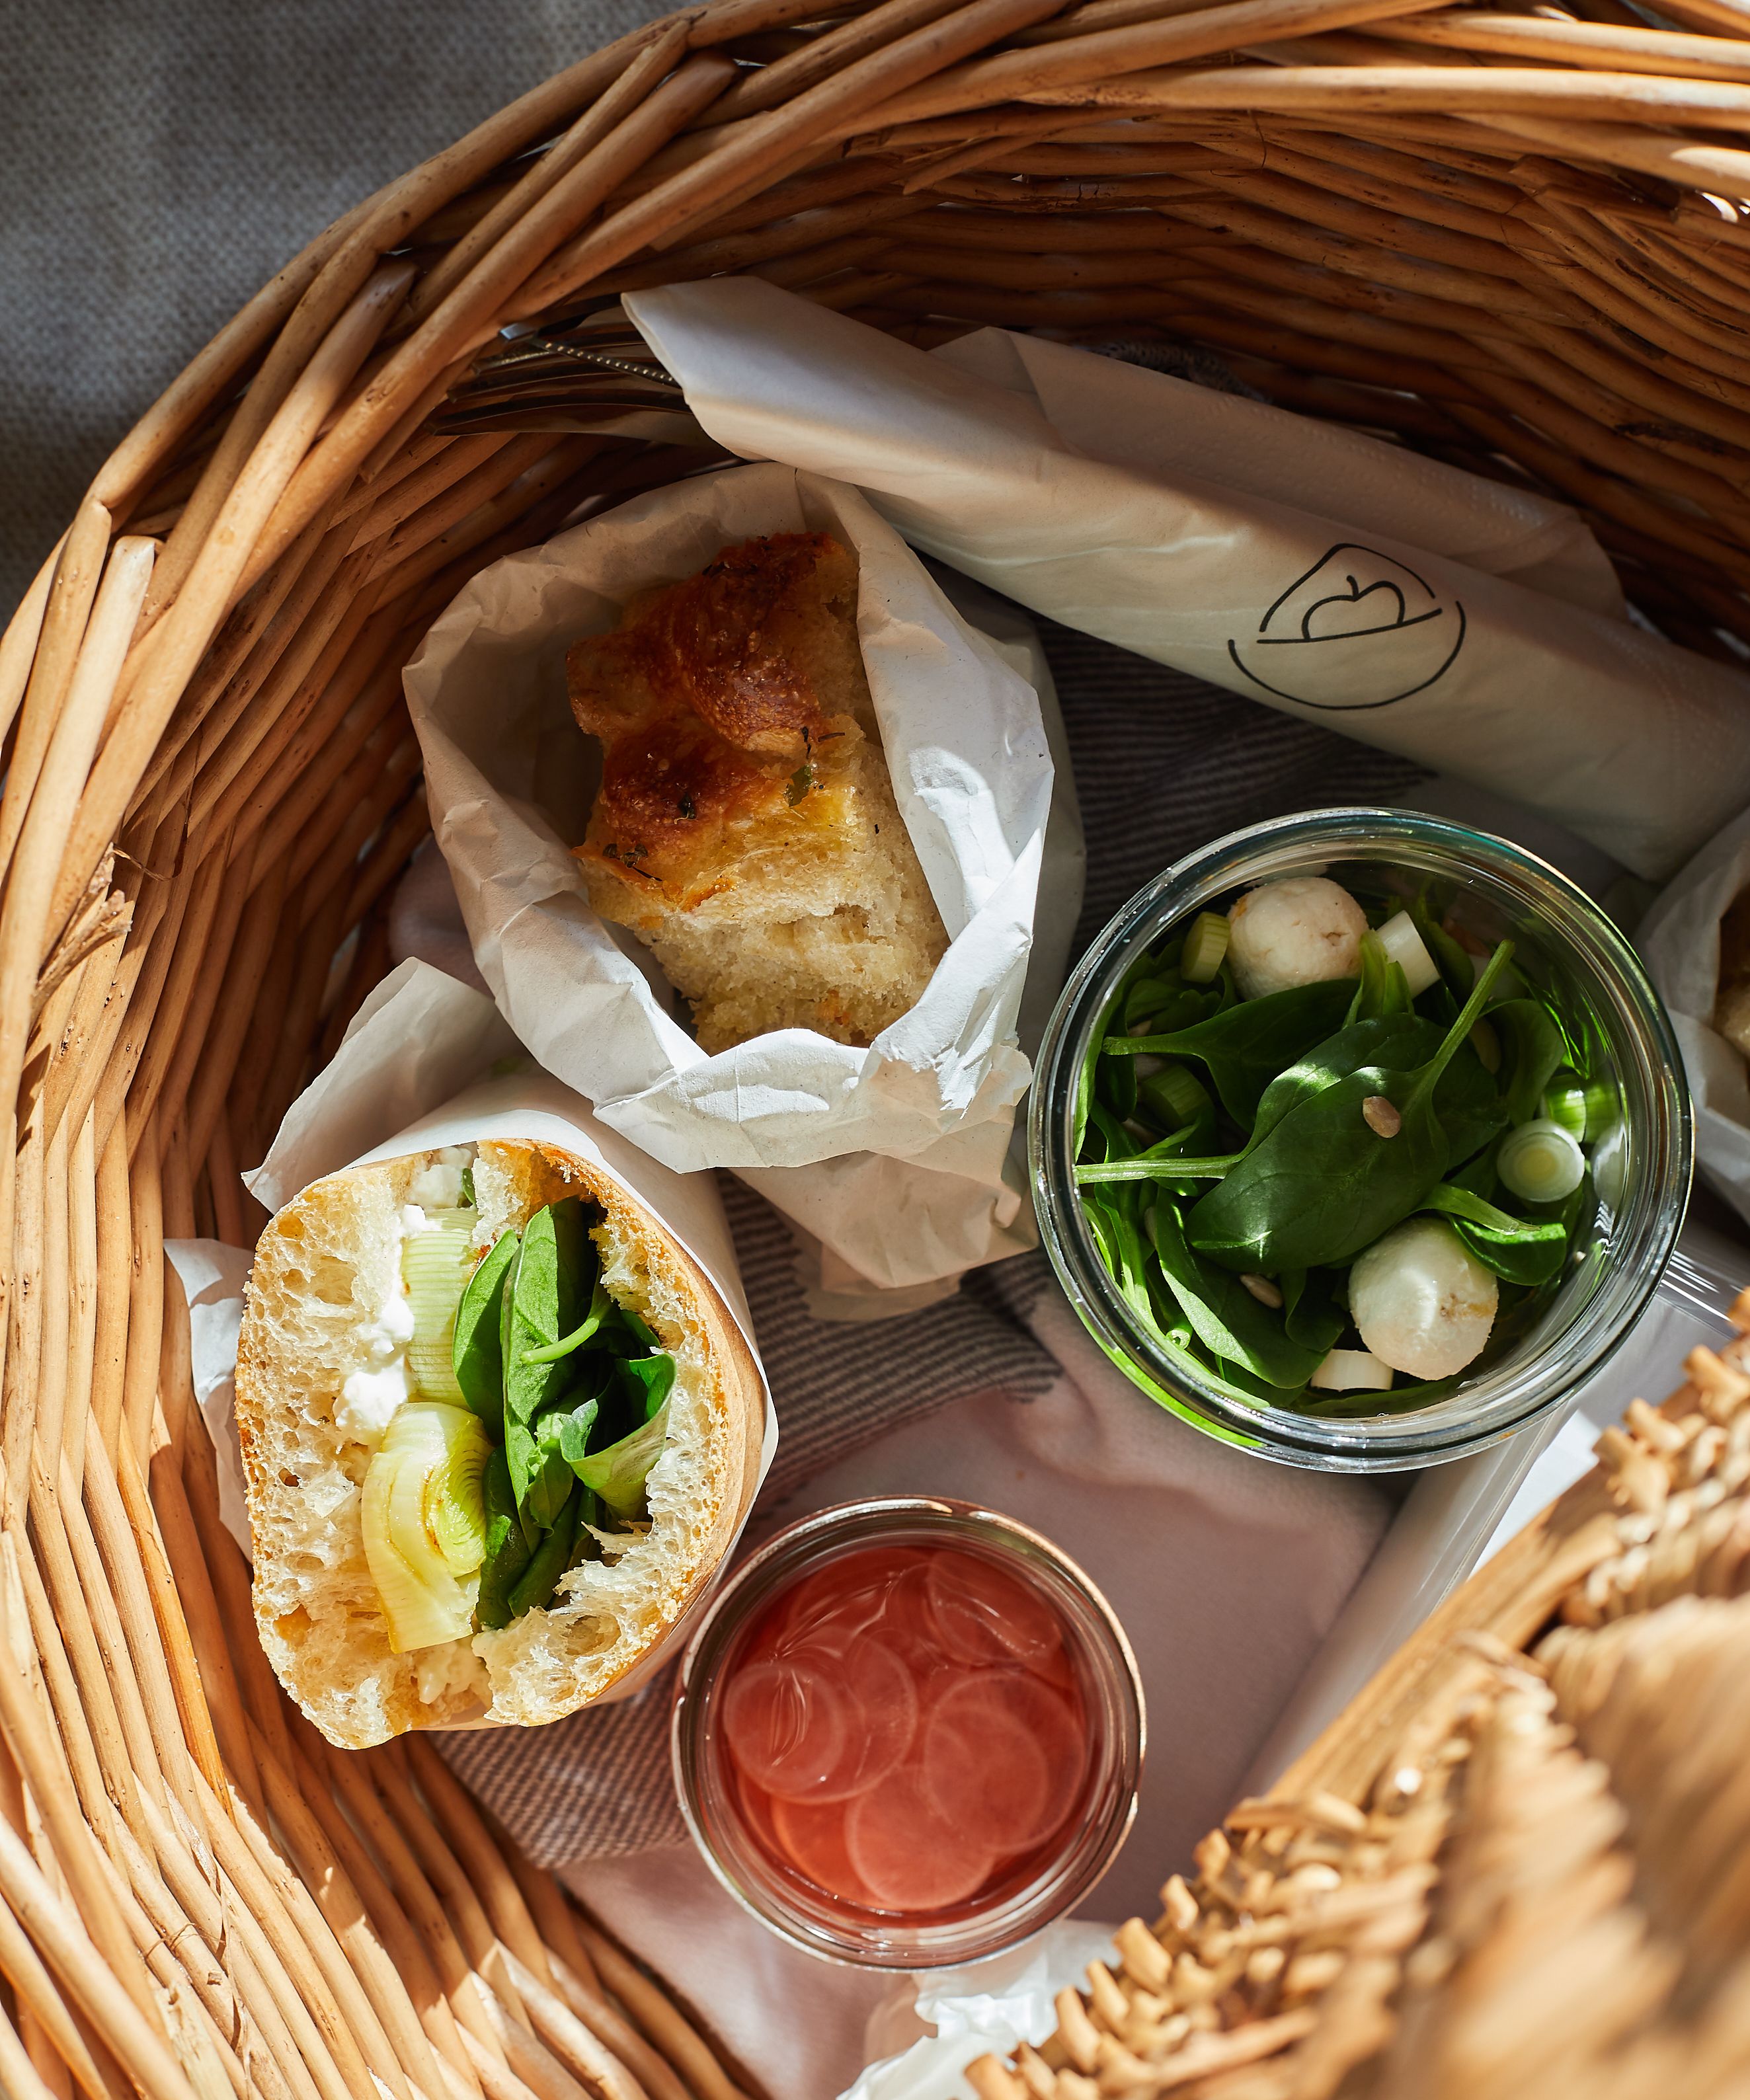 Picknickkorb gefüllt mit Ciabatta-Sandwich, Focaccia, Salat im Glas, eingelegten Radieschenscheiben im Glas